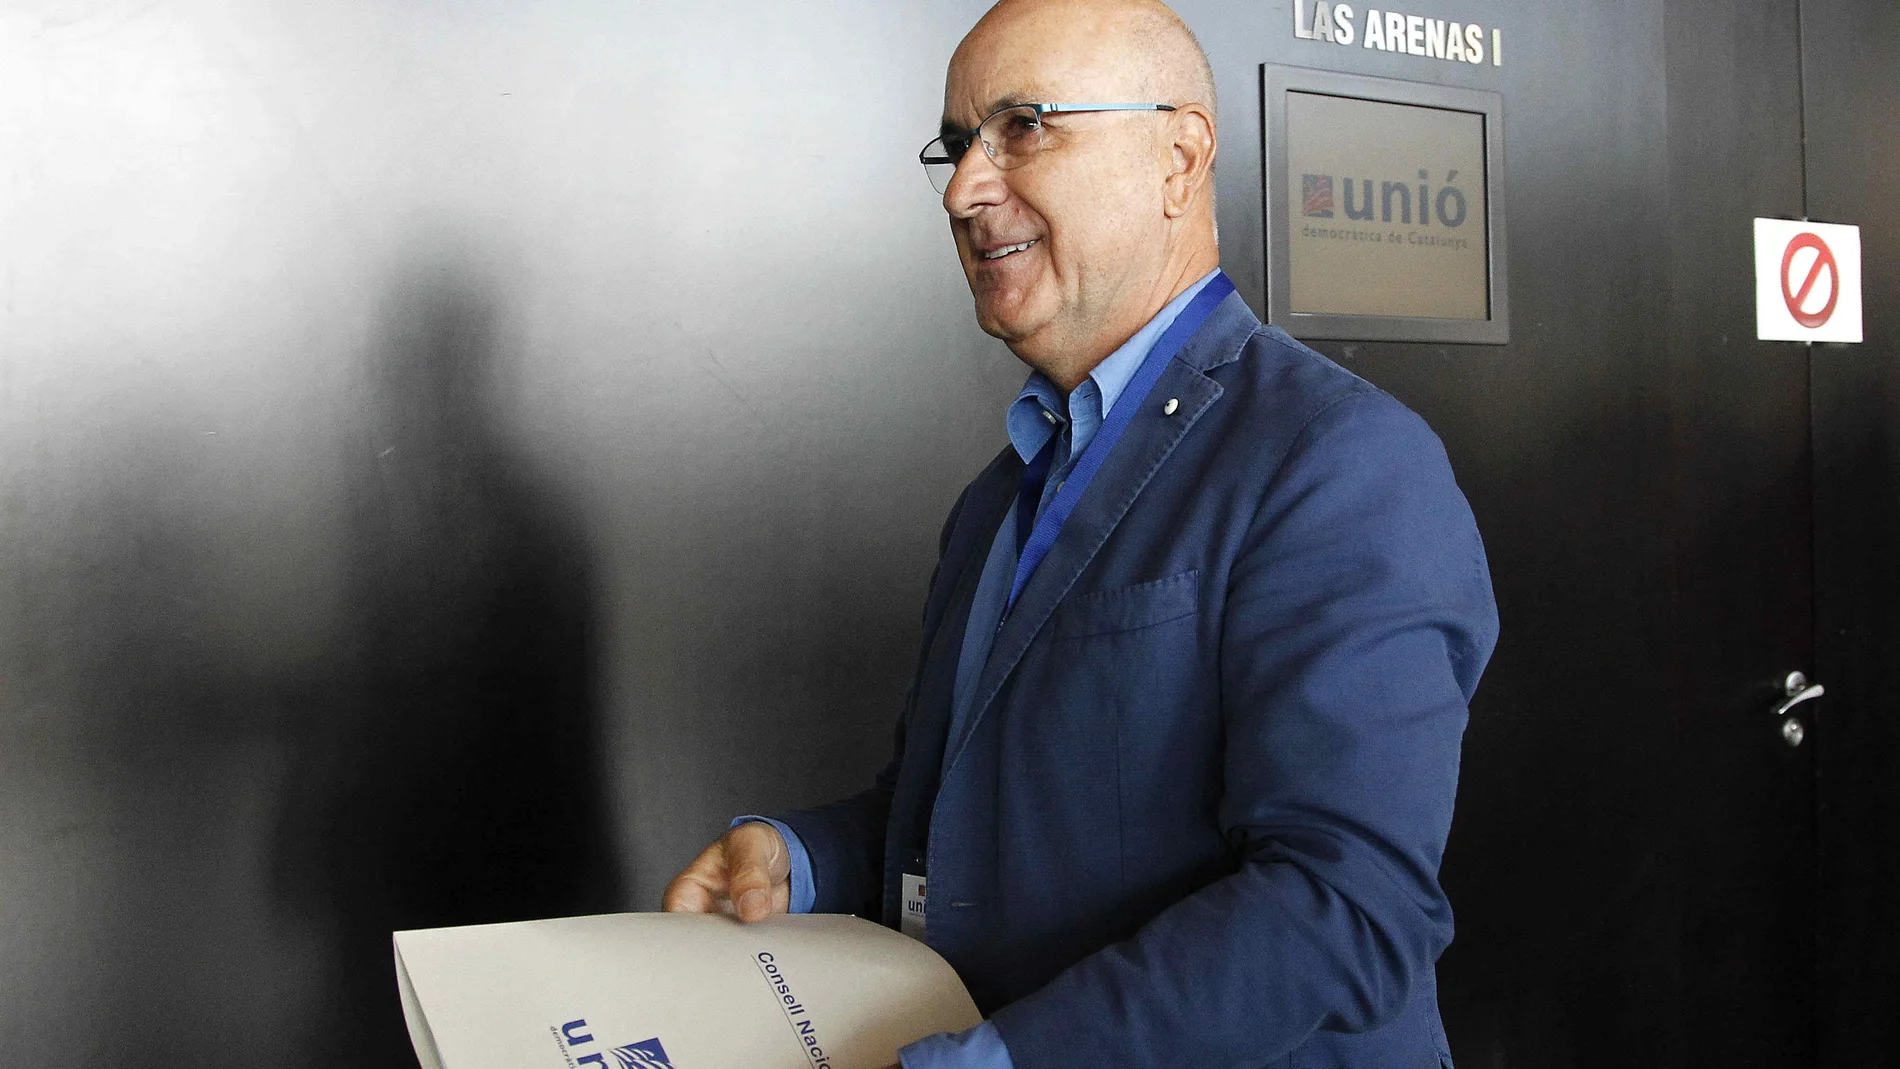 El líder de Unió Democrática de Catalunya (UDC), Josep Antoni Duran Lleida